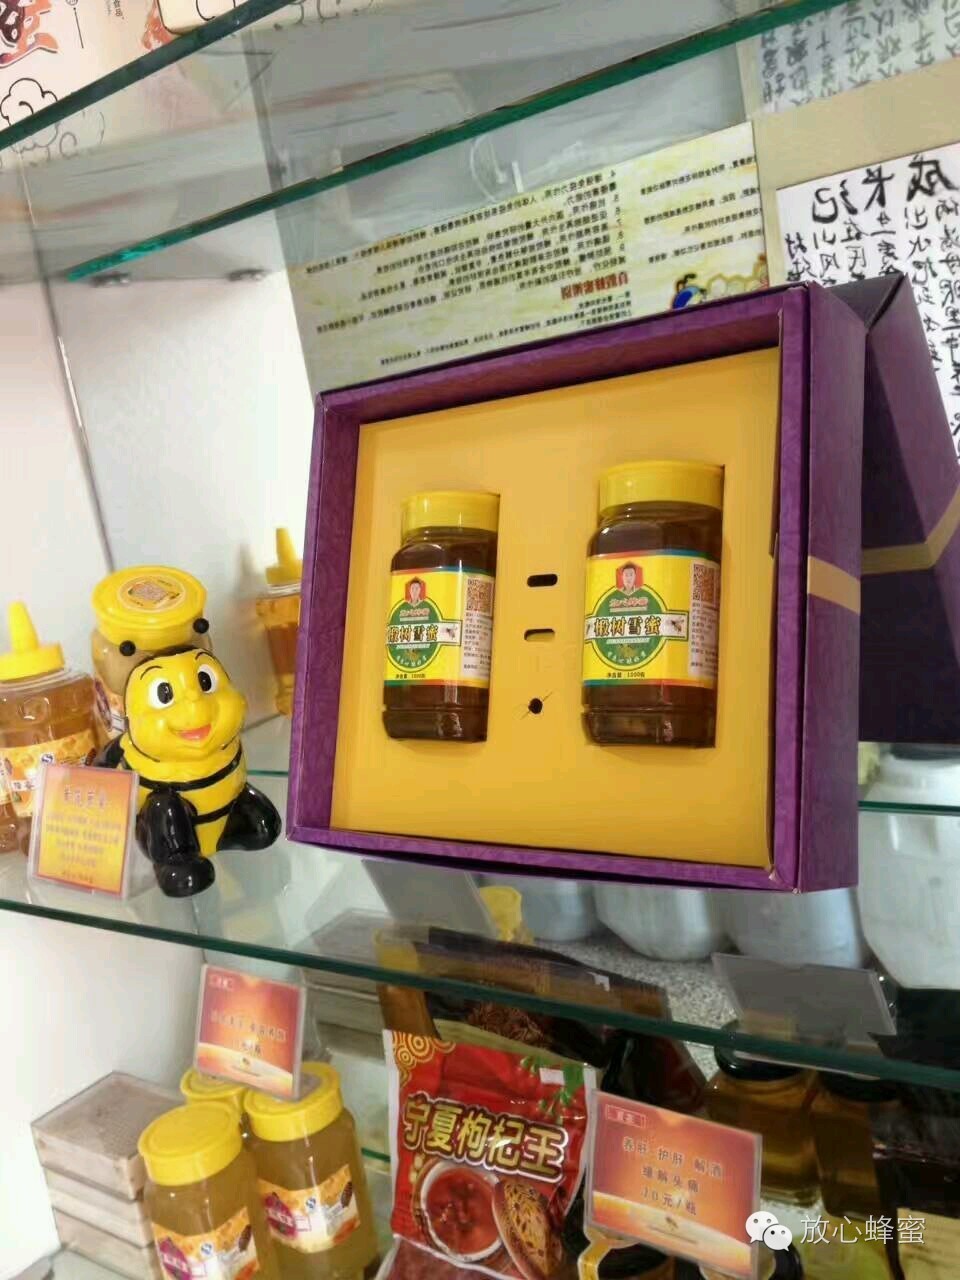 洋槐蜂蜜 蜂蜜醋 蜂蜜对皮肤的作用 柠檬蜂蜜面膜 生姜蜂蜜水